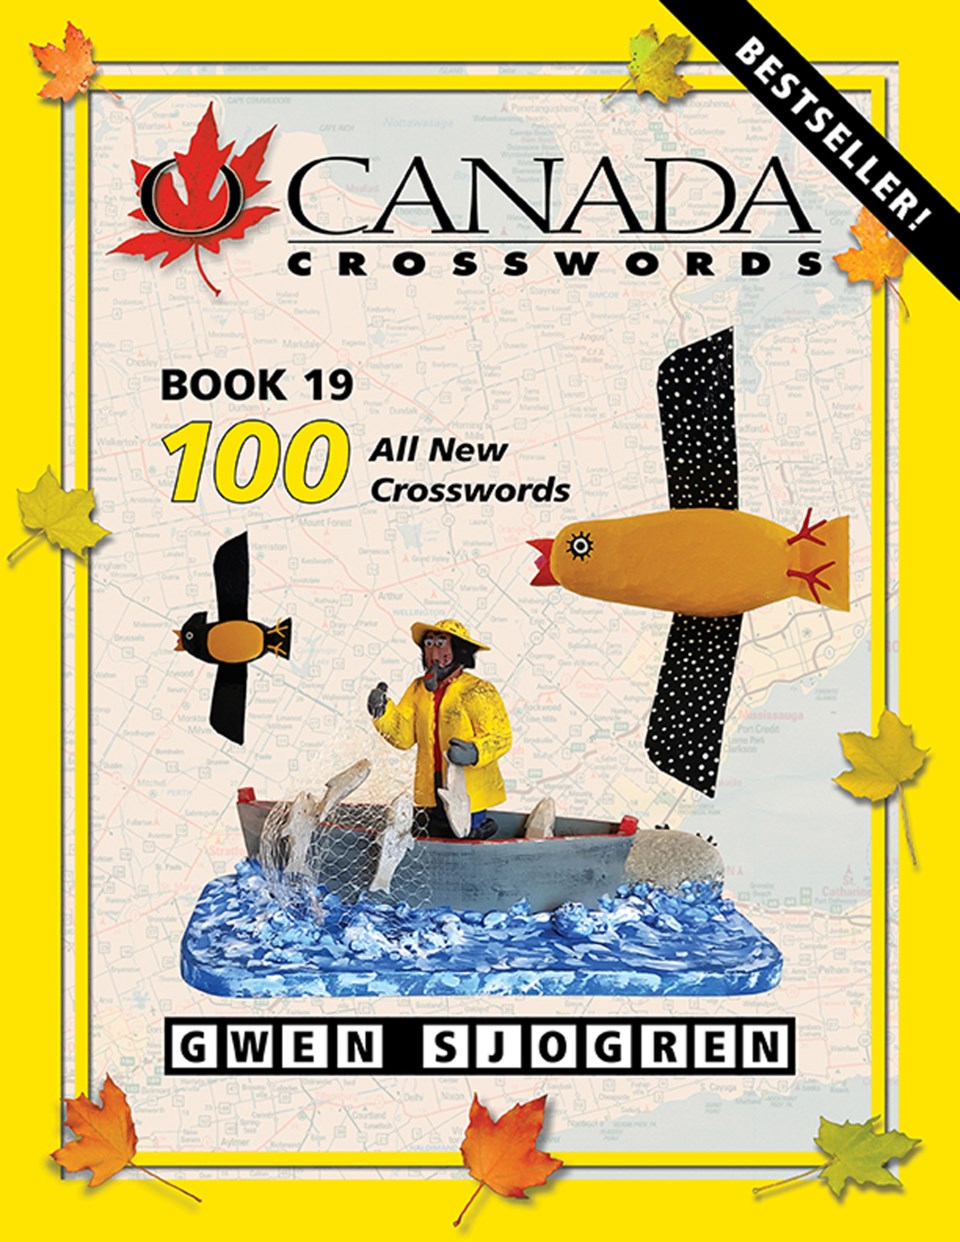 Gwen Sjogren, O Canada Crosswords